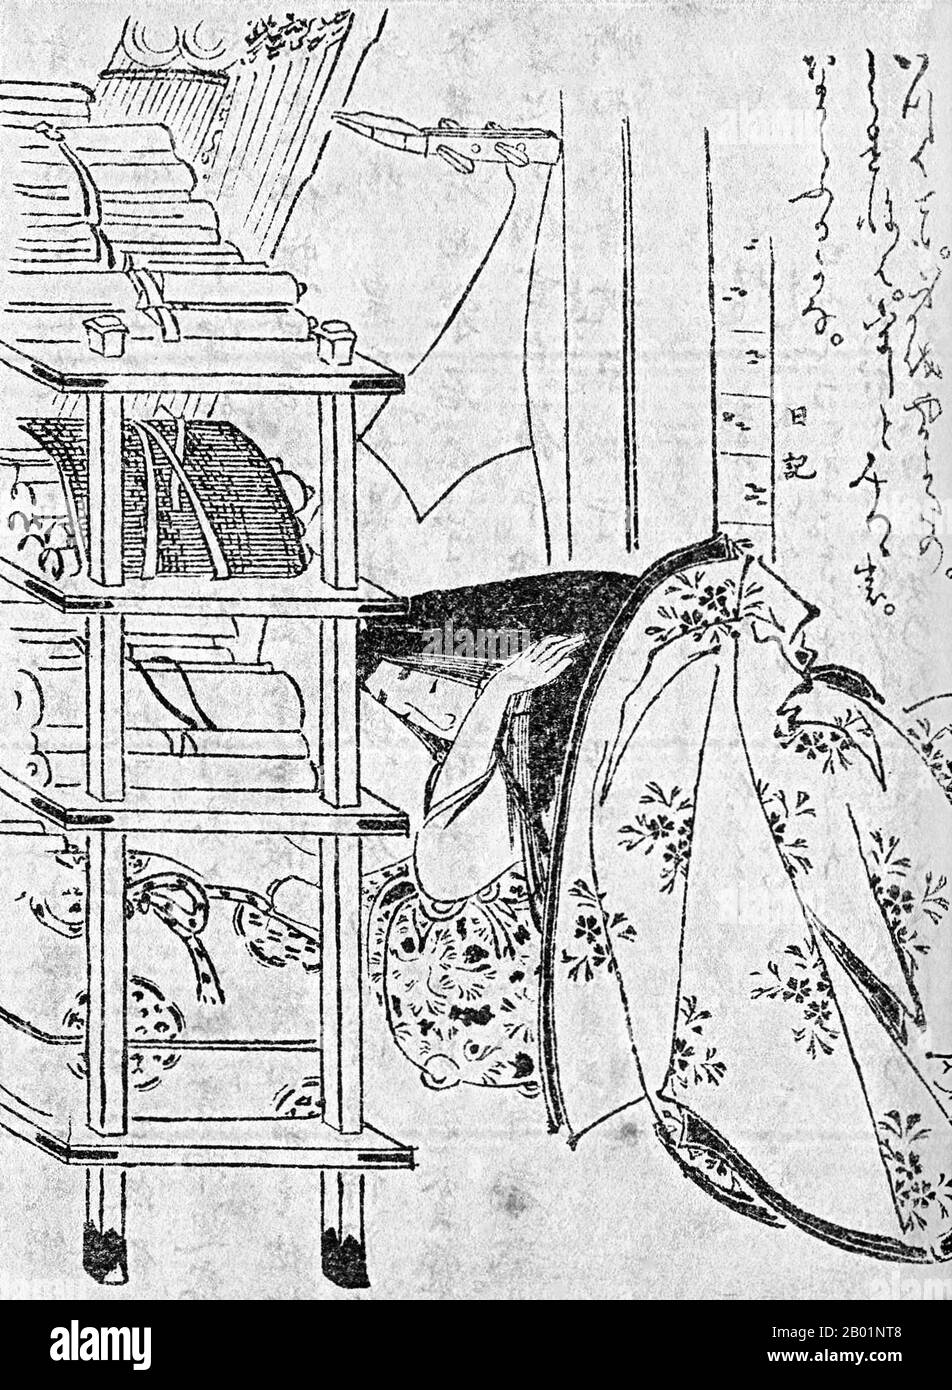 Japan: Der Schriftsteller und Dichter Murasaki Shikibu (ca. 973-1014/1025) schläft. Ukiyo-e Holzschnitt von Kikuchi Yosai (1781-1878), 1868. Murasaki Shikibu (englisch: Lady Murasaki) war eine japanische Schriftstellerin, Dichterin und Wartende am kaiserlichen Hof während der Heian-Zeit. Sie ist bekannt als die Autorin der Geschichte von Genji, die zwischen 1000 und 1012 auf Japanisch geschrieben wurde. Murasaki Shikibu ist ein Spitzname; ihr richtiger Name ist unbekannt, aber sie könnte Fujiwara Takako gewesen sein, die 1007 in einem Tagebuch des Hofes als kaiserliche Dame in Warten erwähnt wurde. Stockfoto